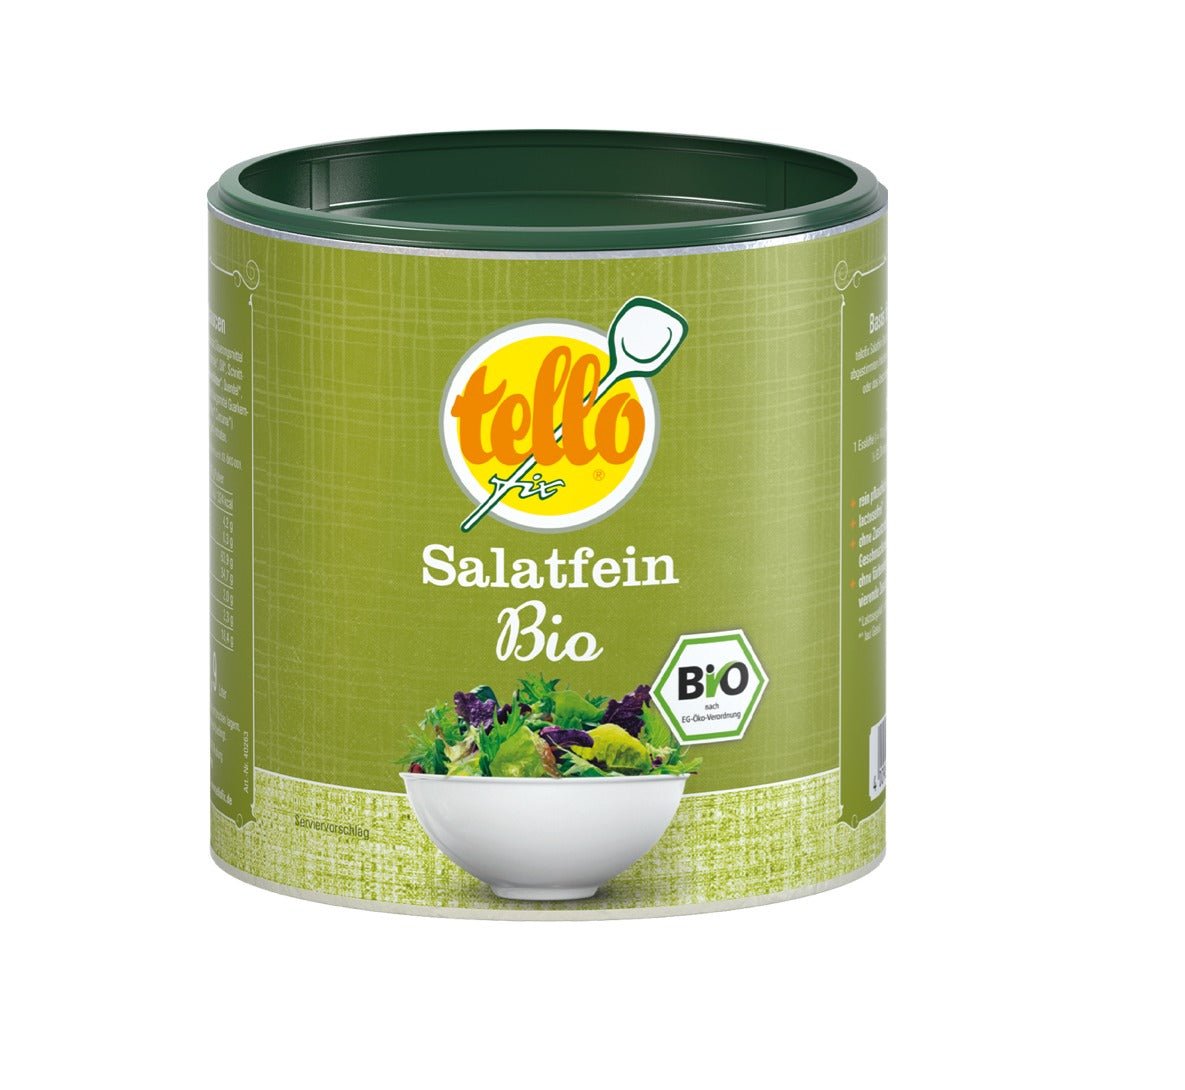 Bio-Salatfein-Mischung von tellofix: Schnell, schmackhaft und bio-zertifiziert - Glutenfrei, Lactosefrei, Vegan! - Feinkost Delikatessen: Wurst und Fleisch Spezialitäten | Wurst-Fleisch.com